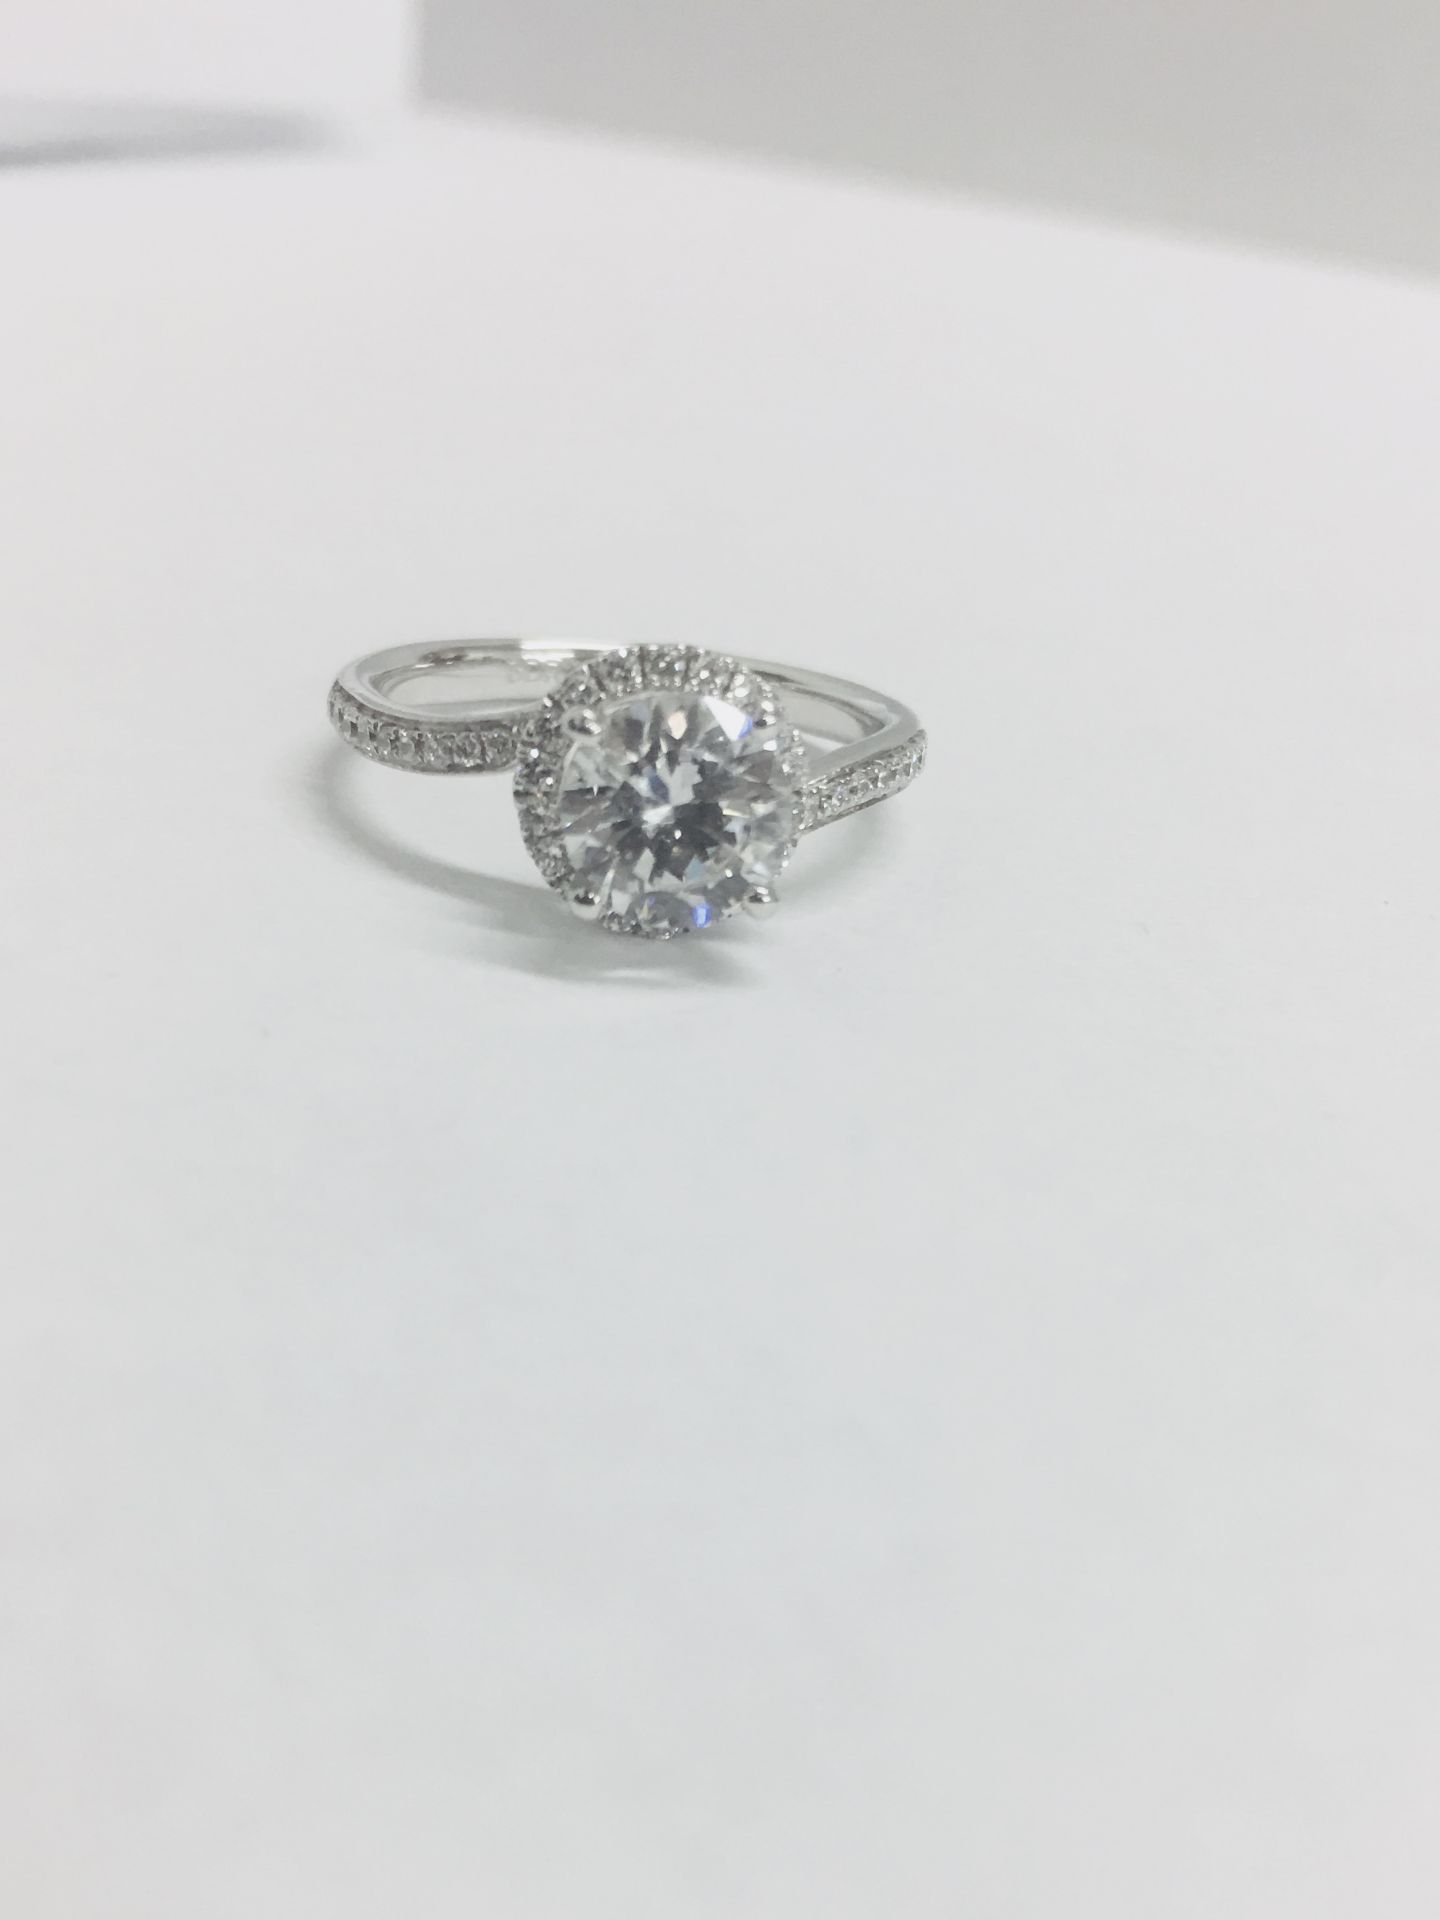 Platinum diamond solitaire ring,0.50ct brilliant cut diamond h colour vs clarity,(clarity - Image 2 of 6